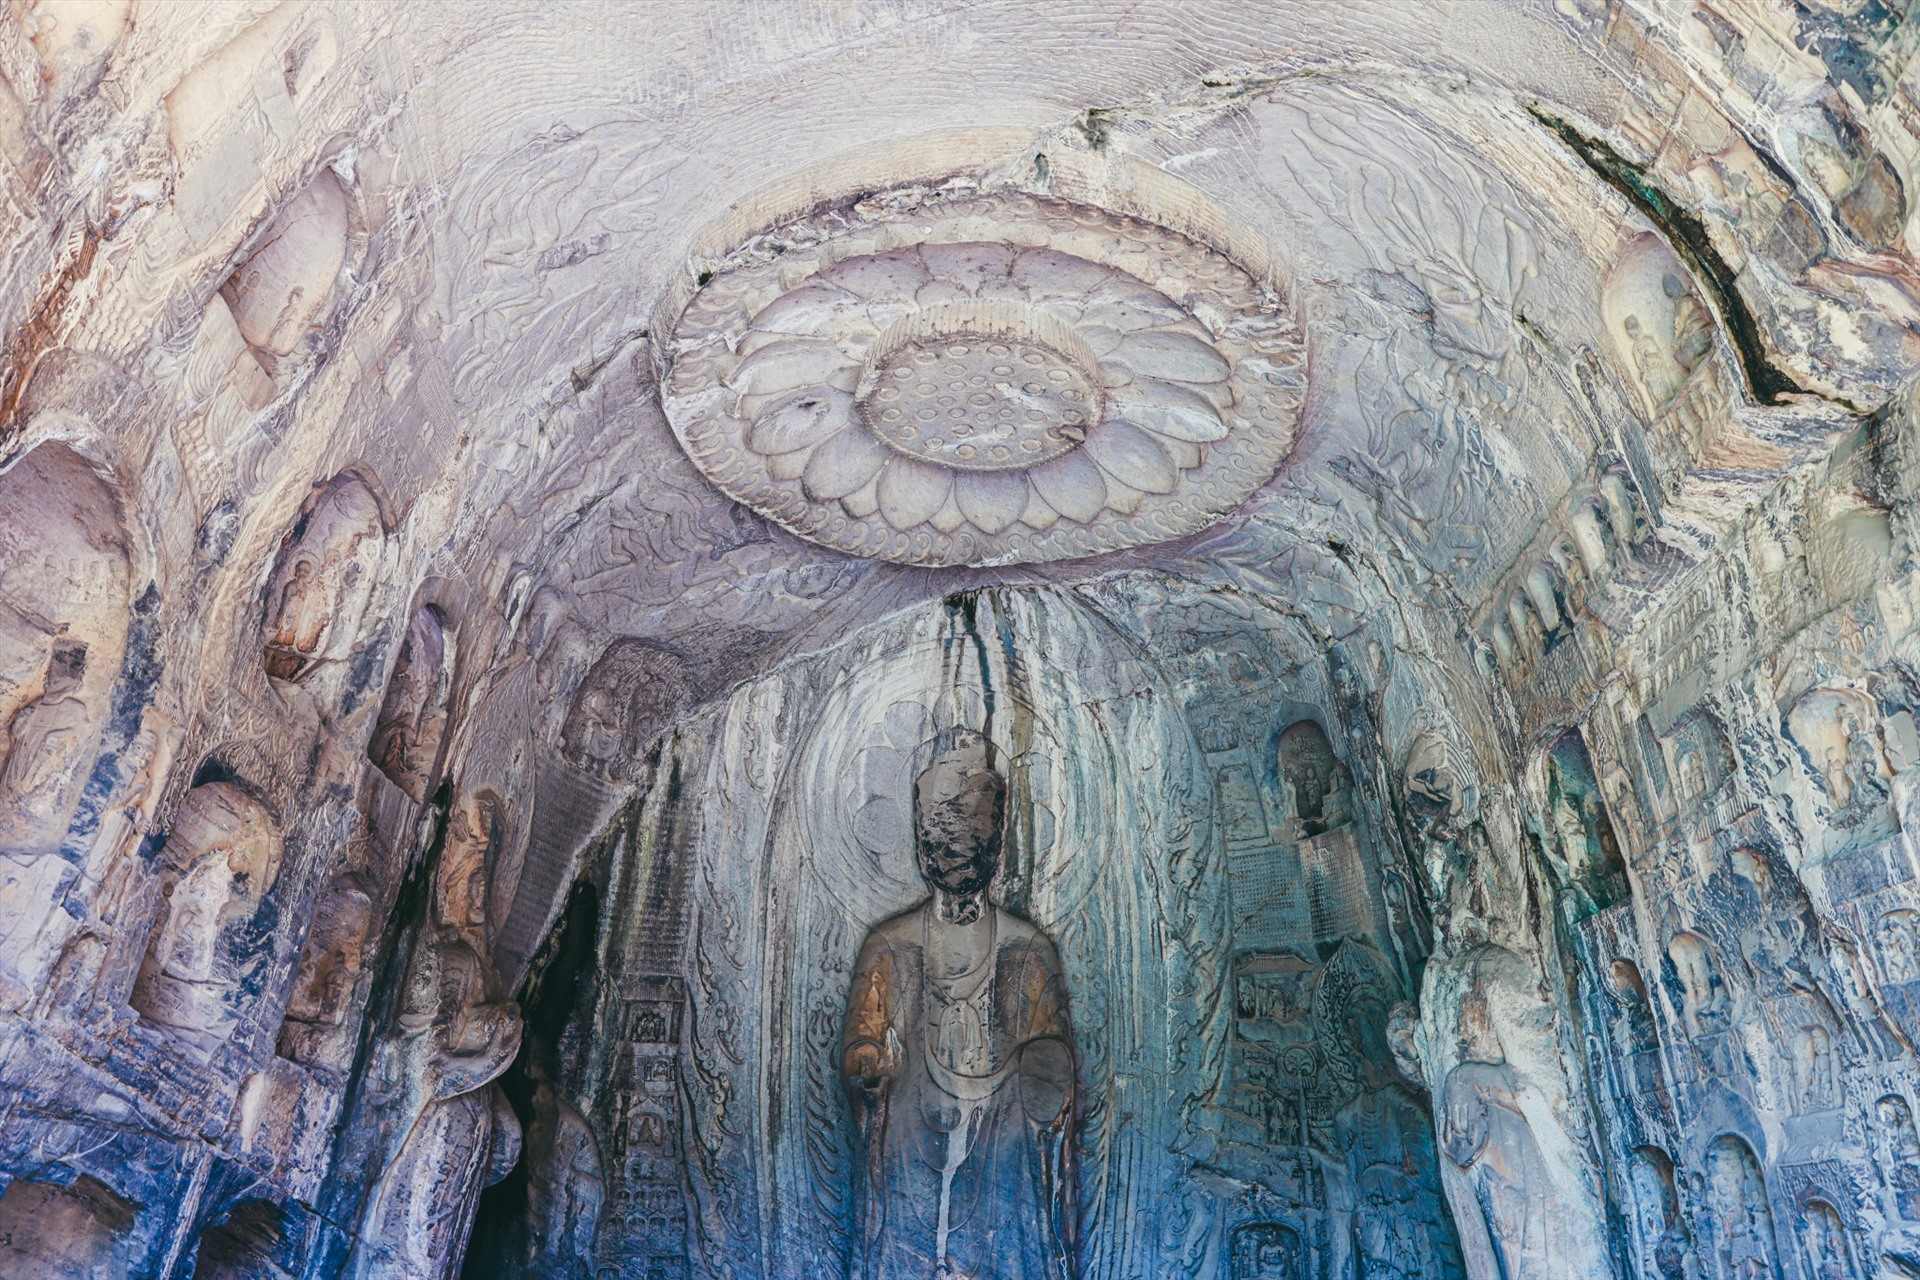 nổi tiếng nhất là tượng Phật Lư Xá Na cao 17,14m ngồi khoanh chân trên đài sen. Các tác phẩm điêu khắc tại đây thể hiện sự tiến bộ vượt bậc trong tư tưởng lẫn thiết kế khi có nhiều tượng là hình ảnh người phụ nữ và quan lại triều đình